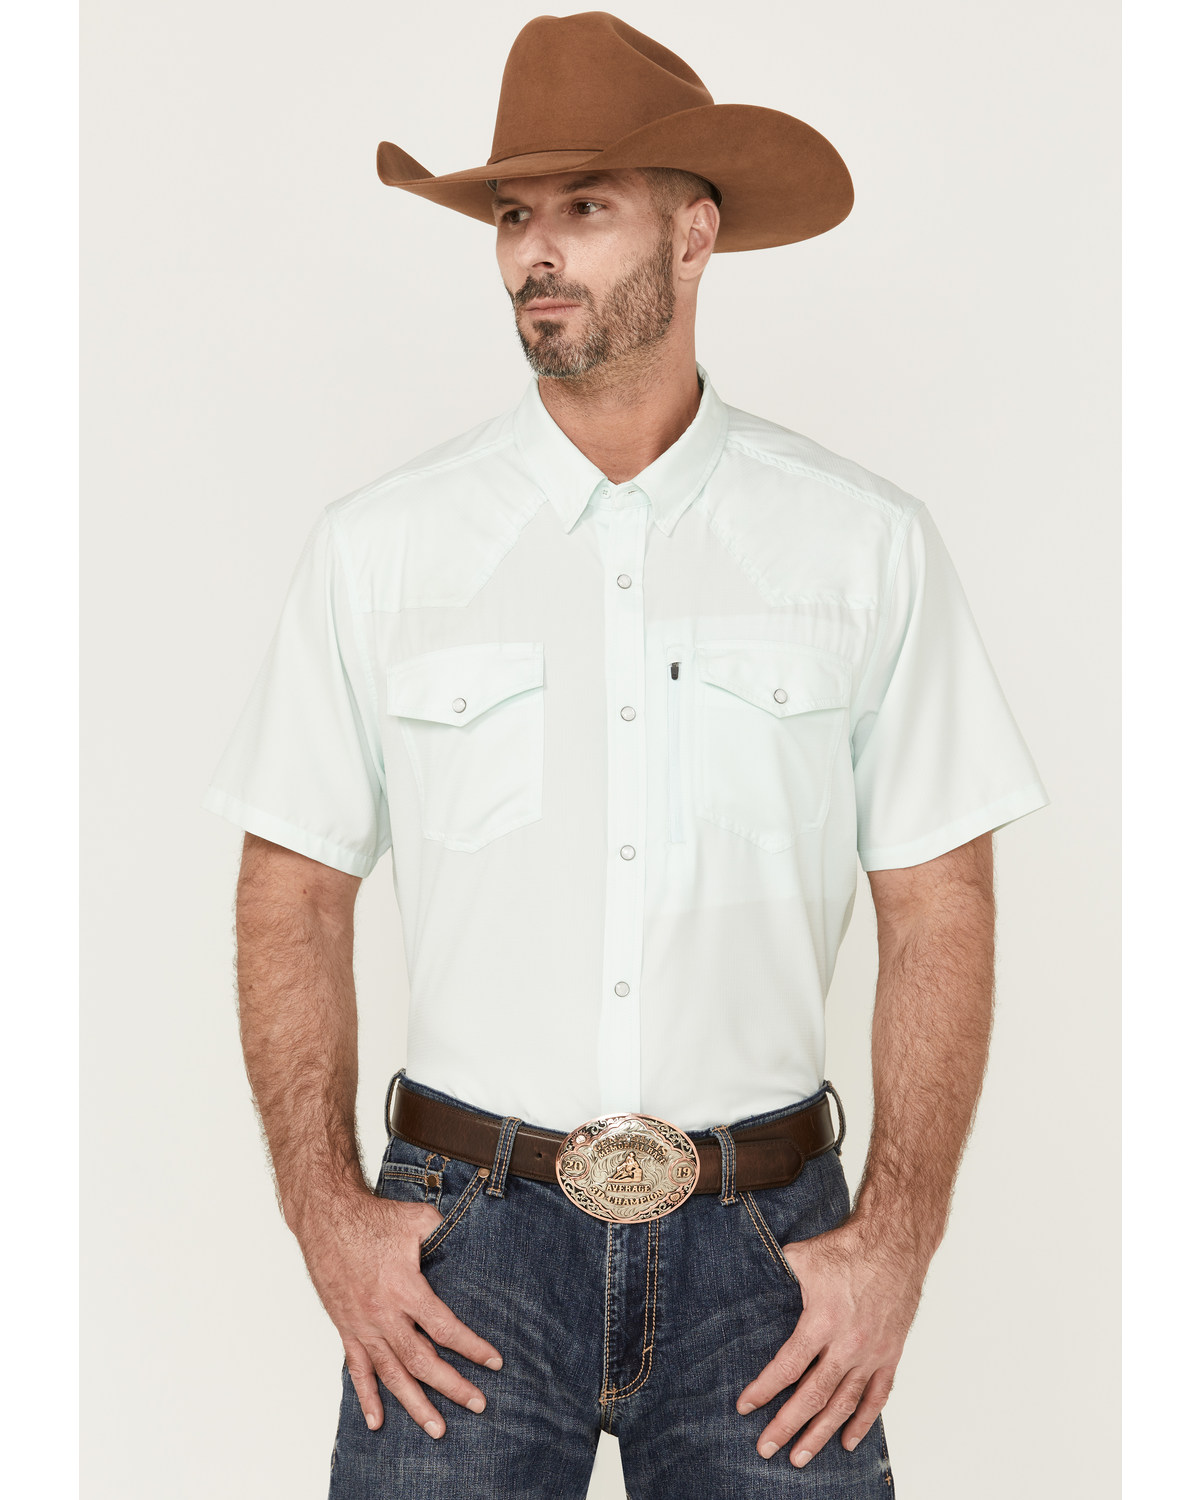 RANK 45® Men's 8 Seconds Short Sleeve Pearl Snap Western Tech Shirt